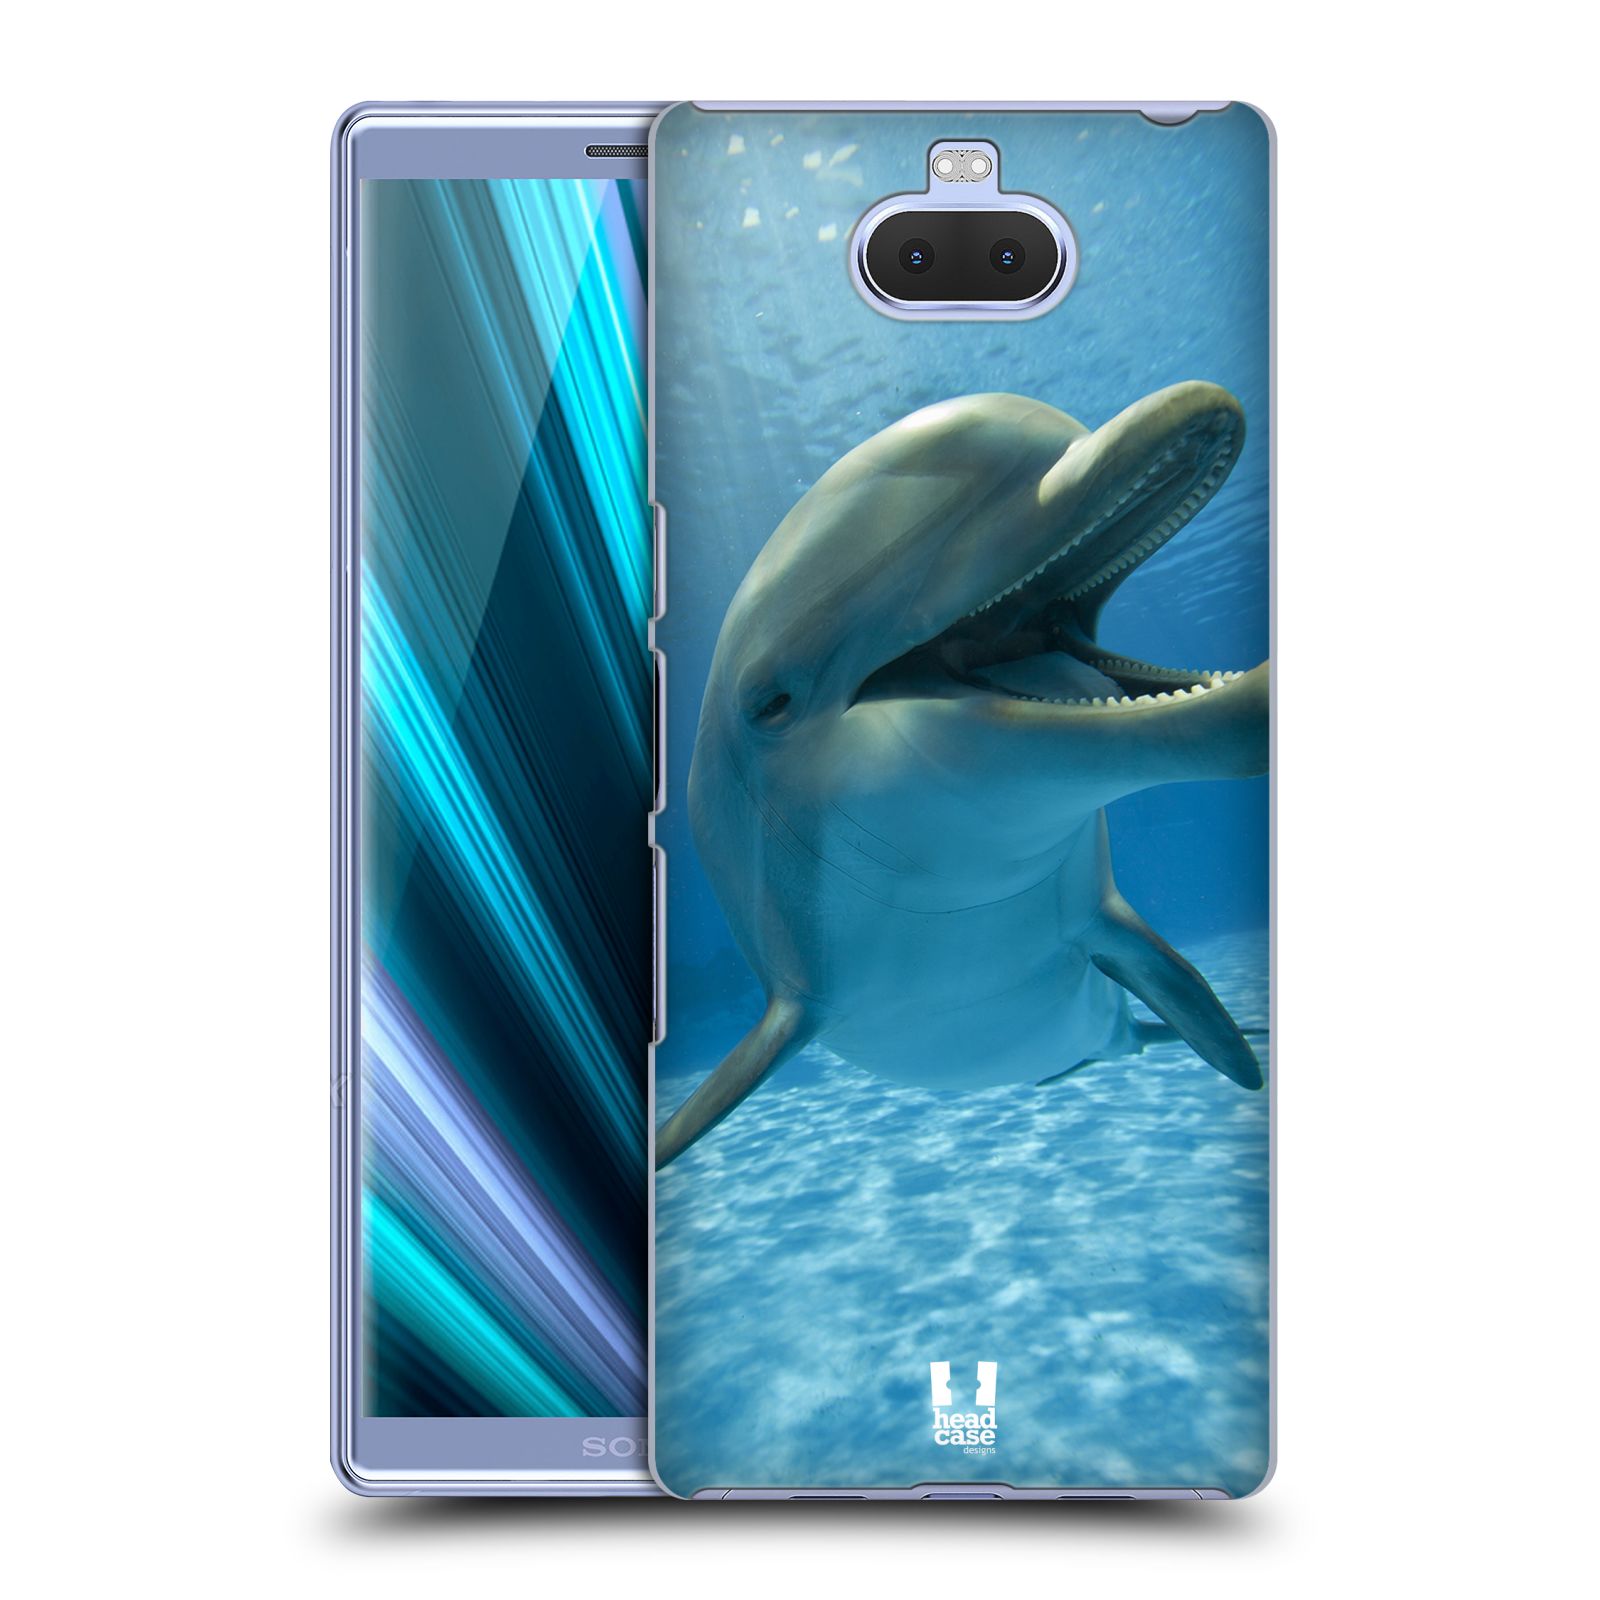 Zadní obal pro mobil Sony Xperia 10 ULTRA - HEAD CASE - Svět zvířat delfín v moři